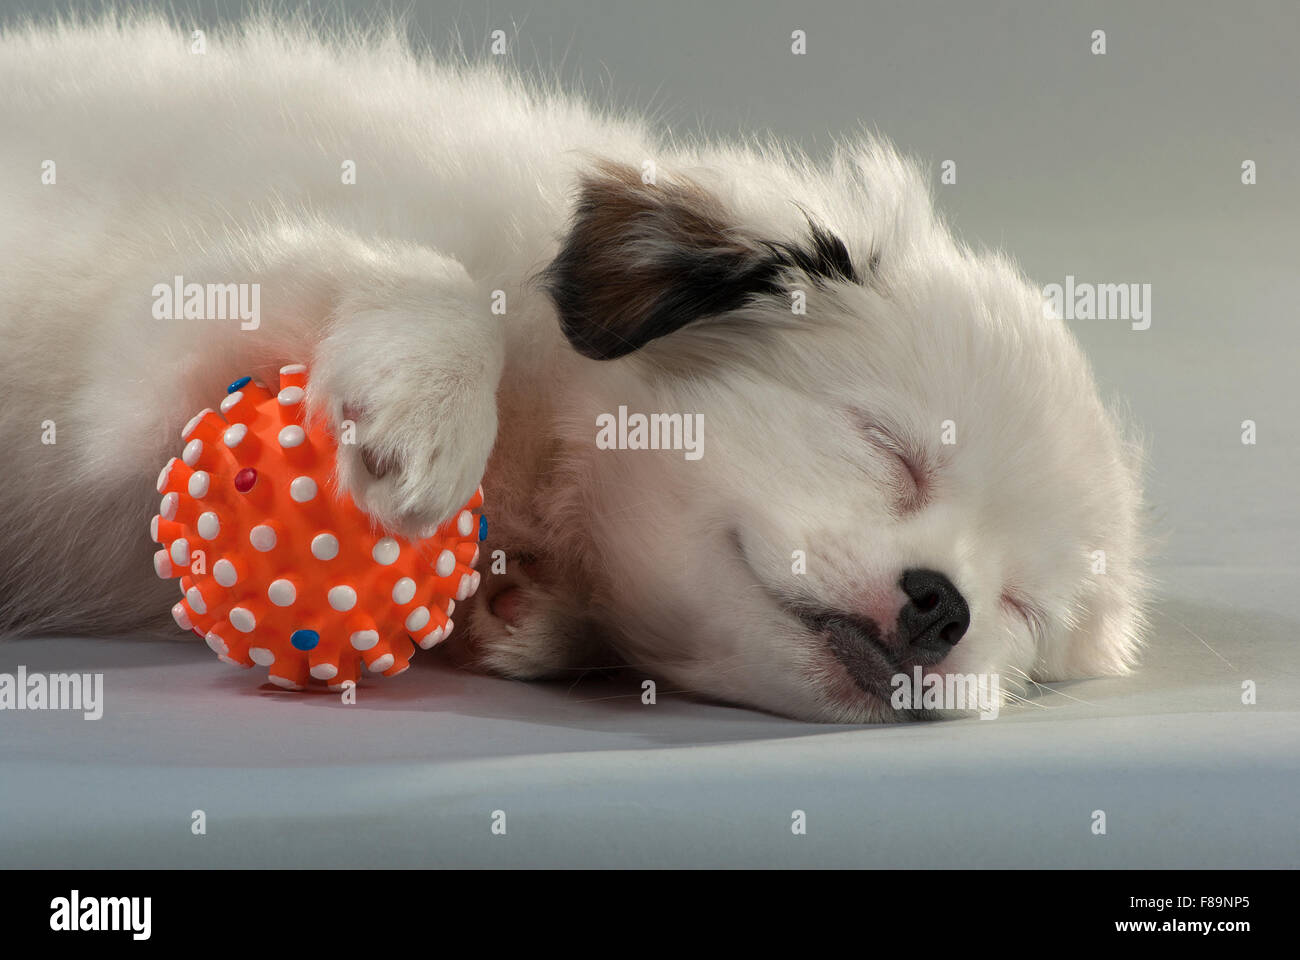 Ritratto del cucciolo a pelo del compagno si mescola con una sfera arancione. sfondo grigio, formato orizzontale. Foto Stock